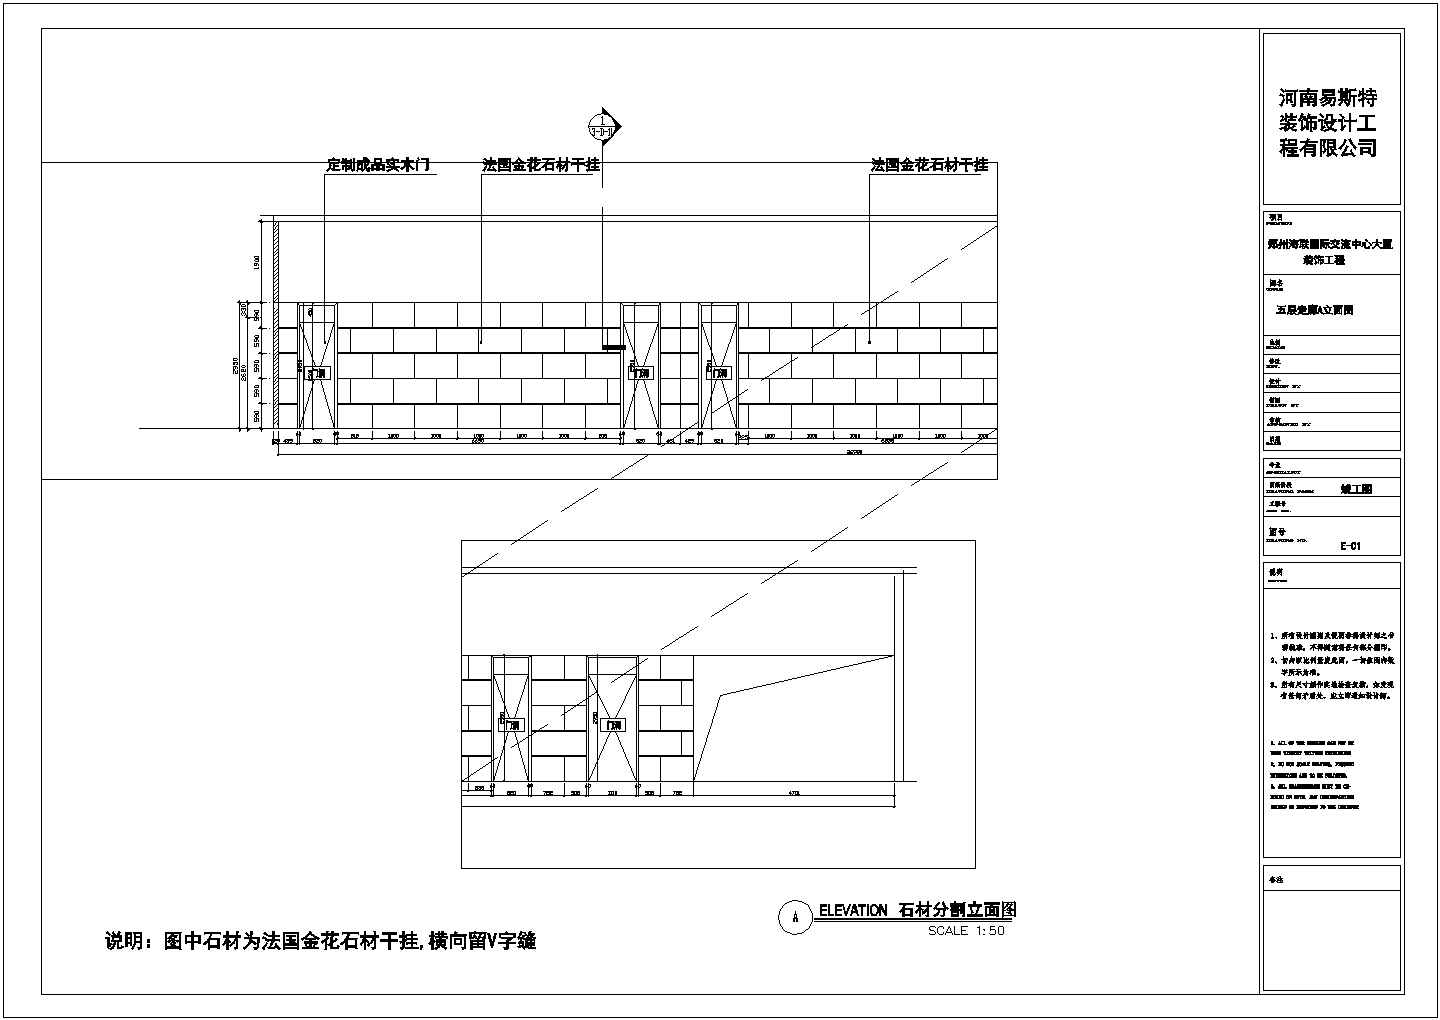 郑州某国际交流中心大厦装饰装修设计图